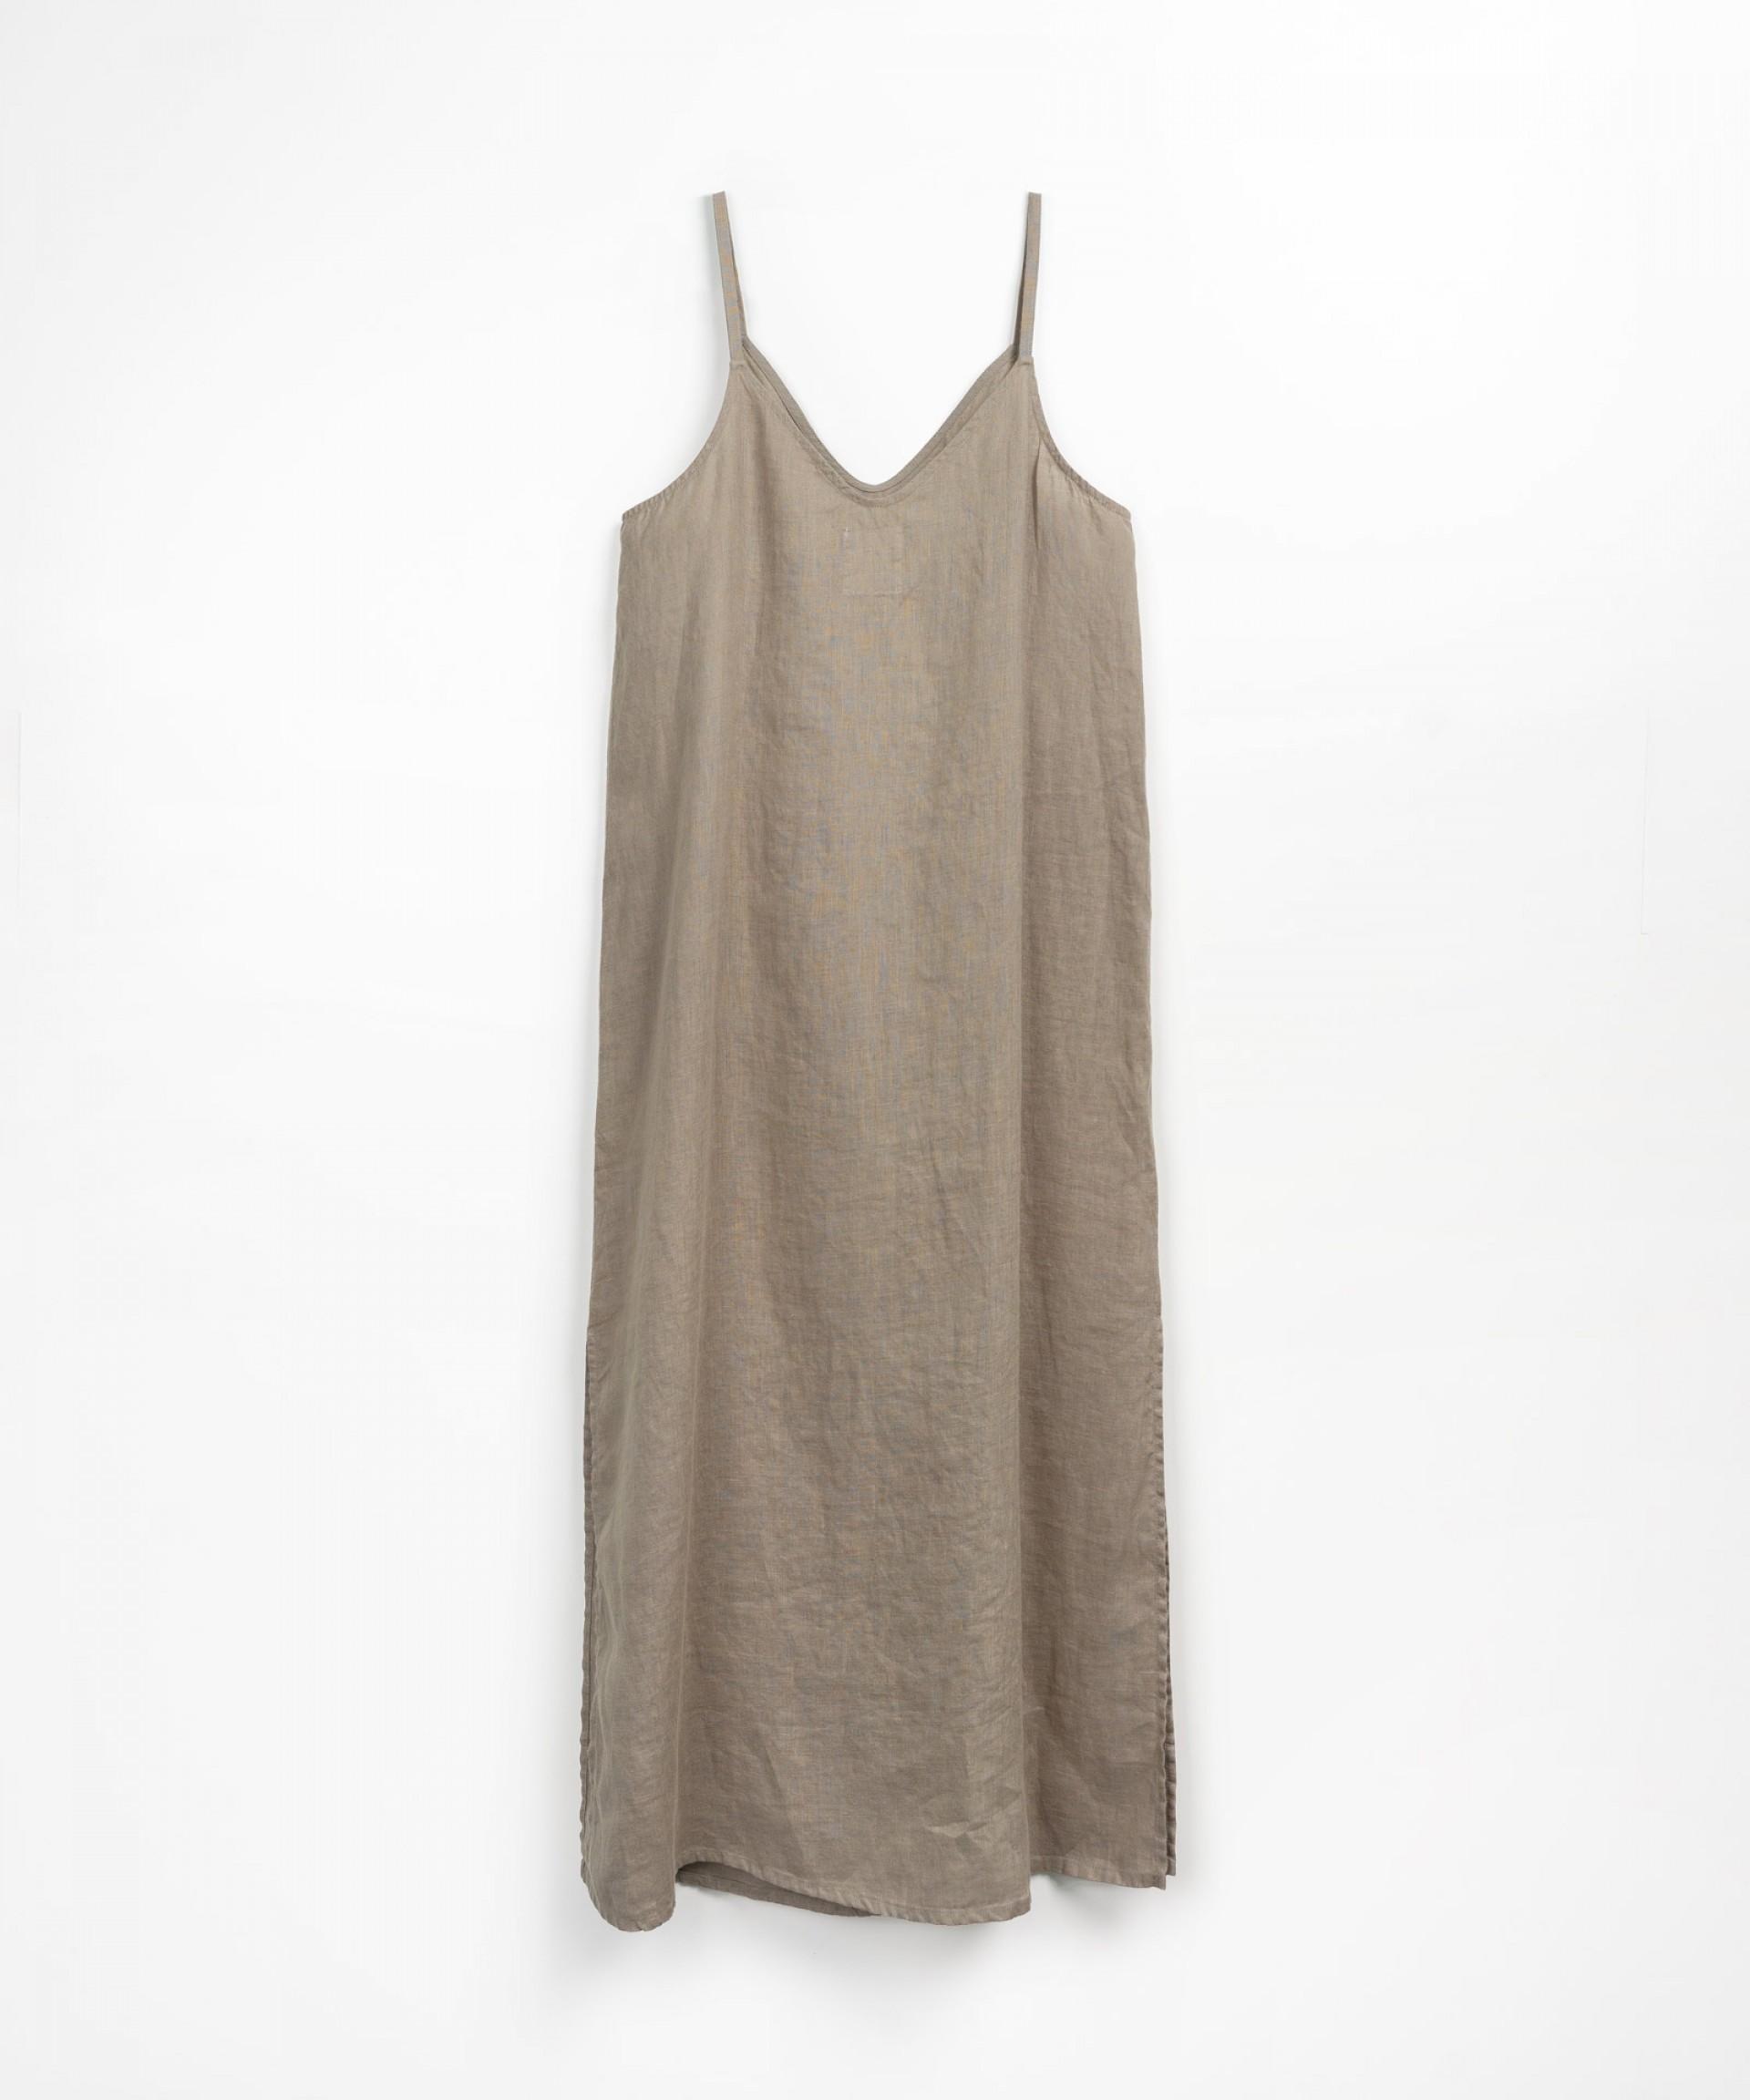 Linen dress with straps | Textile Art